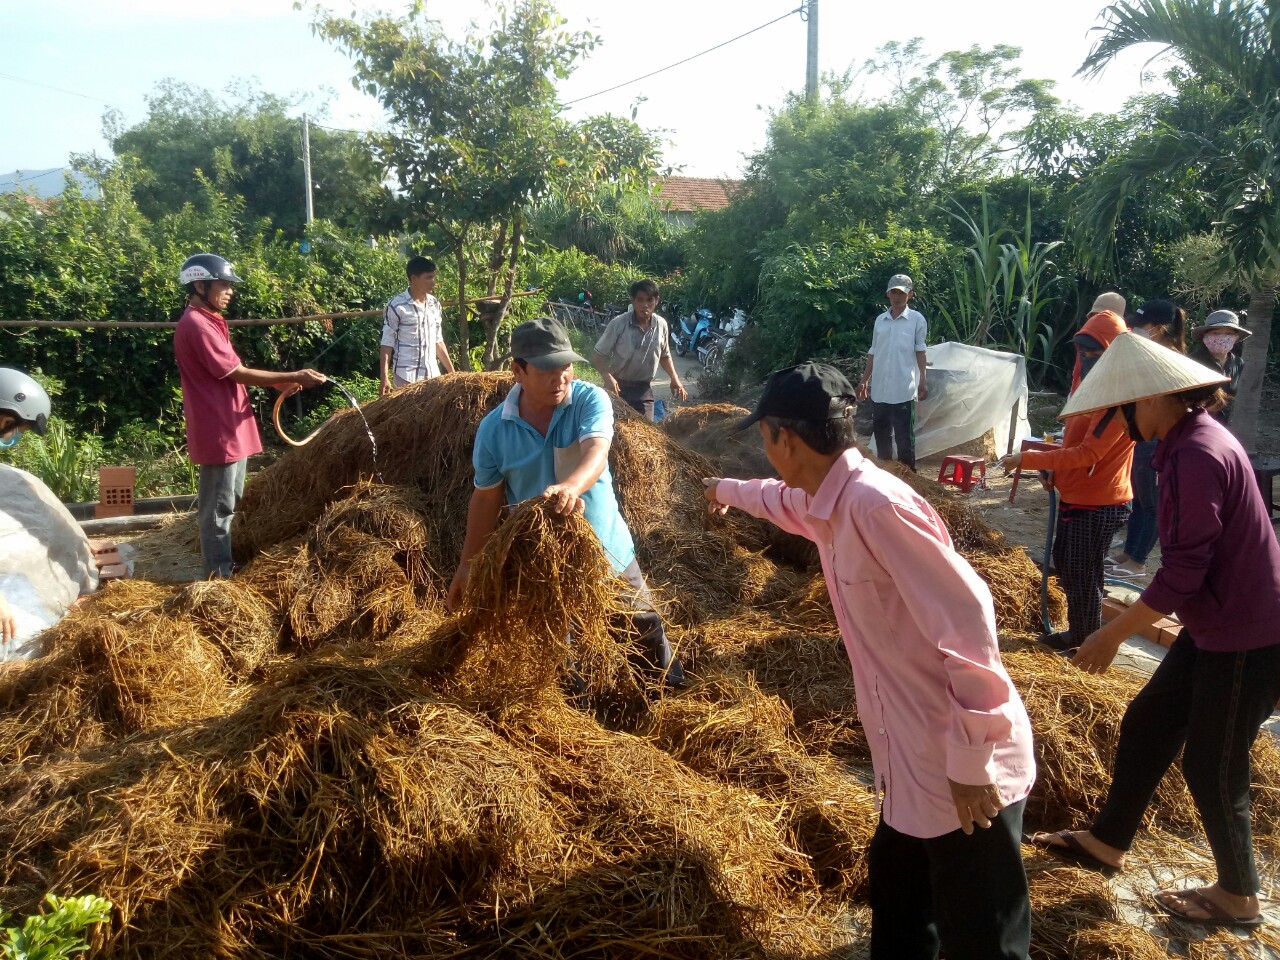 Trồng nấm giỏi, một nông dân ở Bình Định được mời làm giảng viên dạy nghề trồng nấm - Ảnh 1.